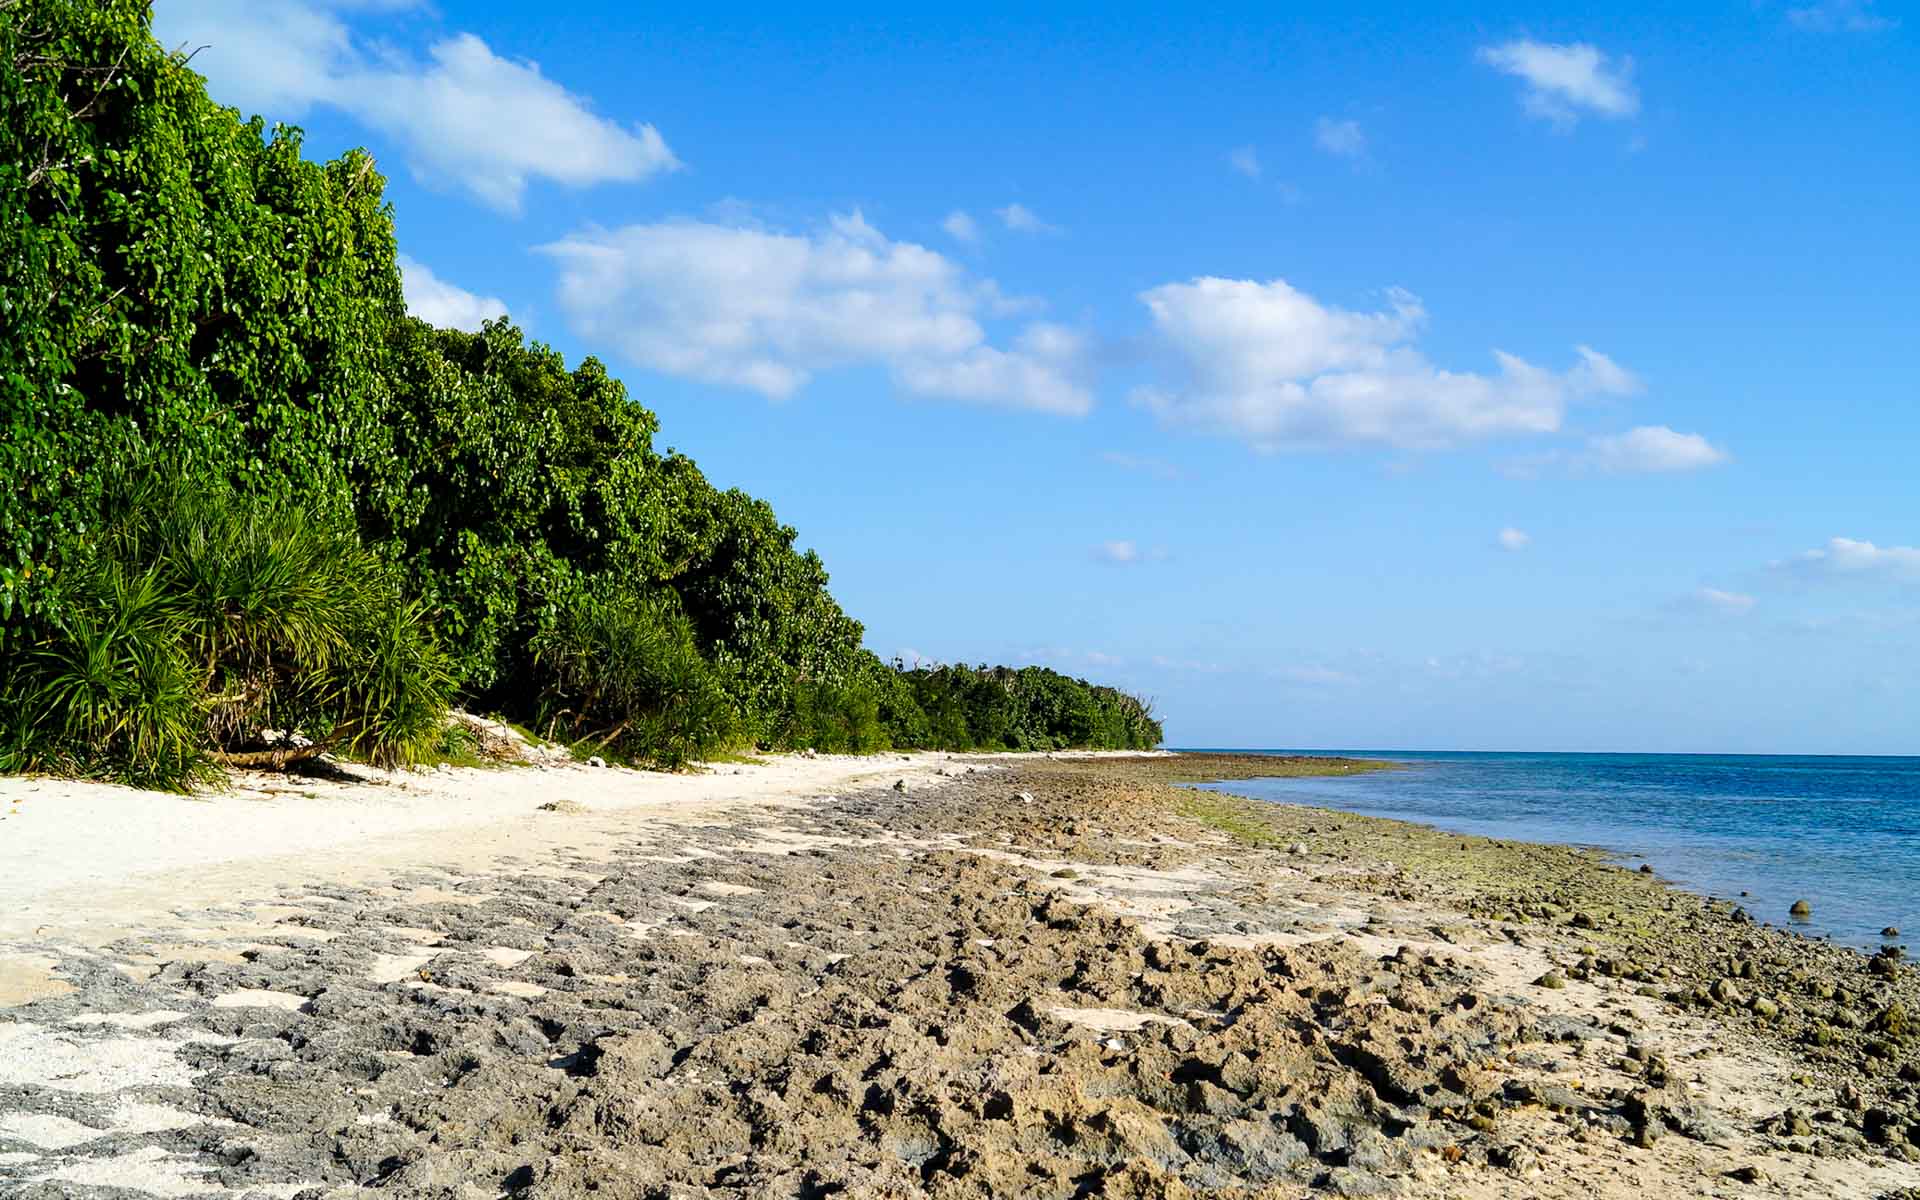 Das Ufer des einsamen Strandes von Kaiji, der japanischen Insel Taketomi der japanischen Yaeyama Inseln, ist von dichten dunkelgrünen Pflanzen gesäumt, der Sandstrand ist mit Steinen durchzogen und das Meer schimmert tief blau.